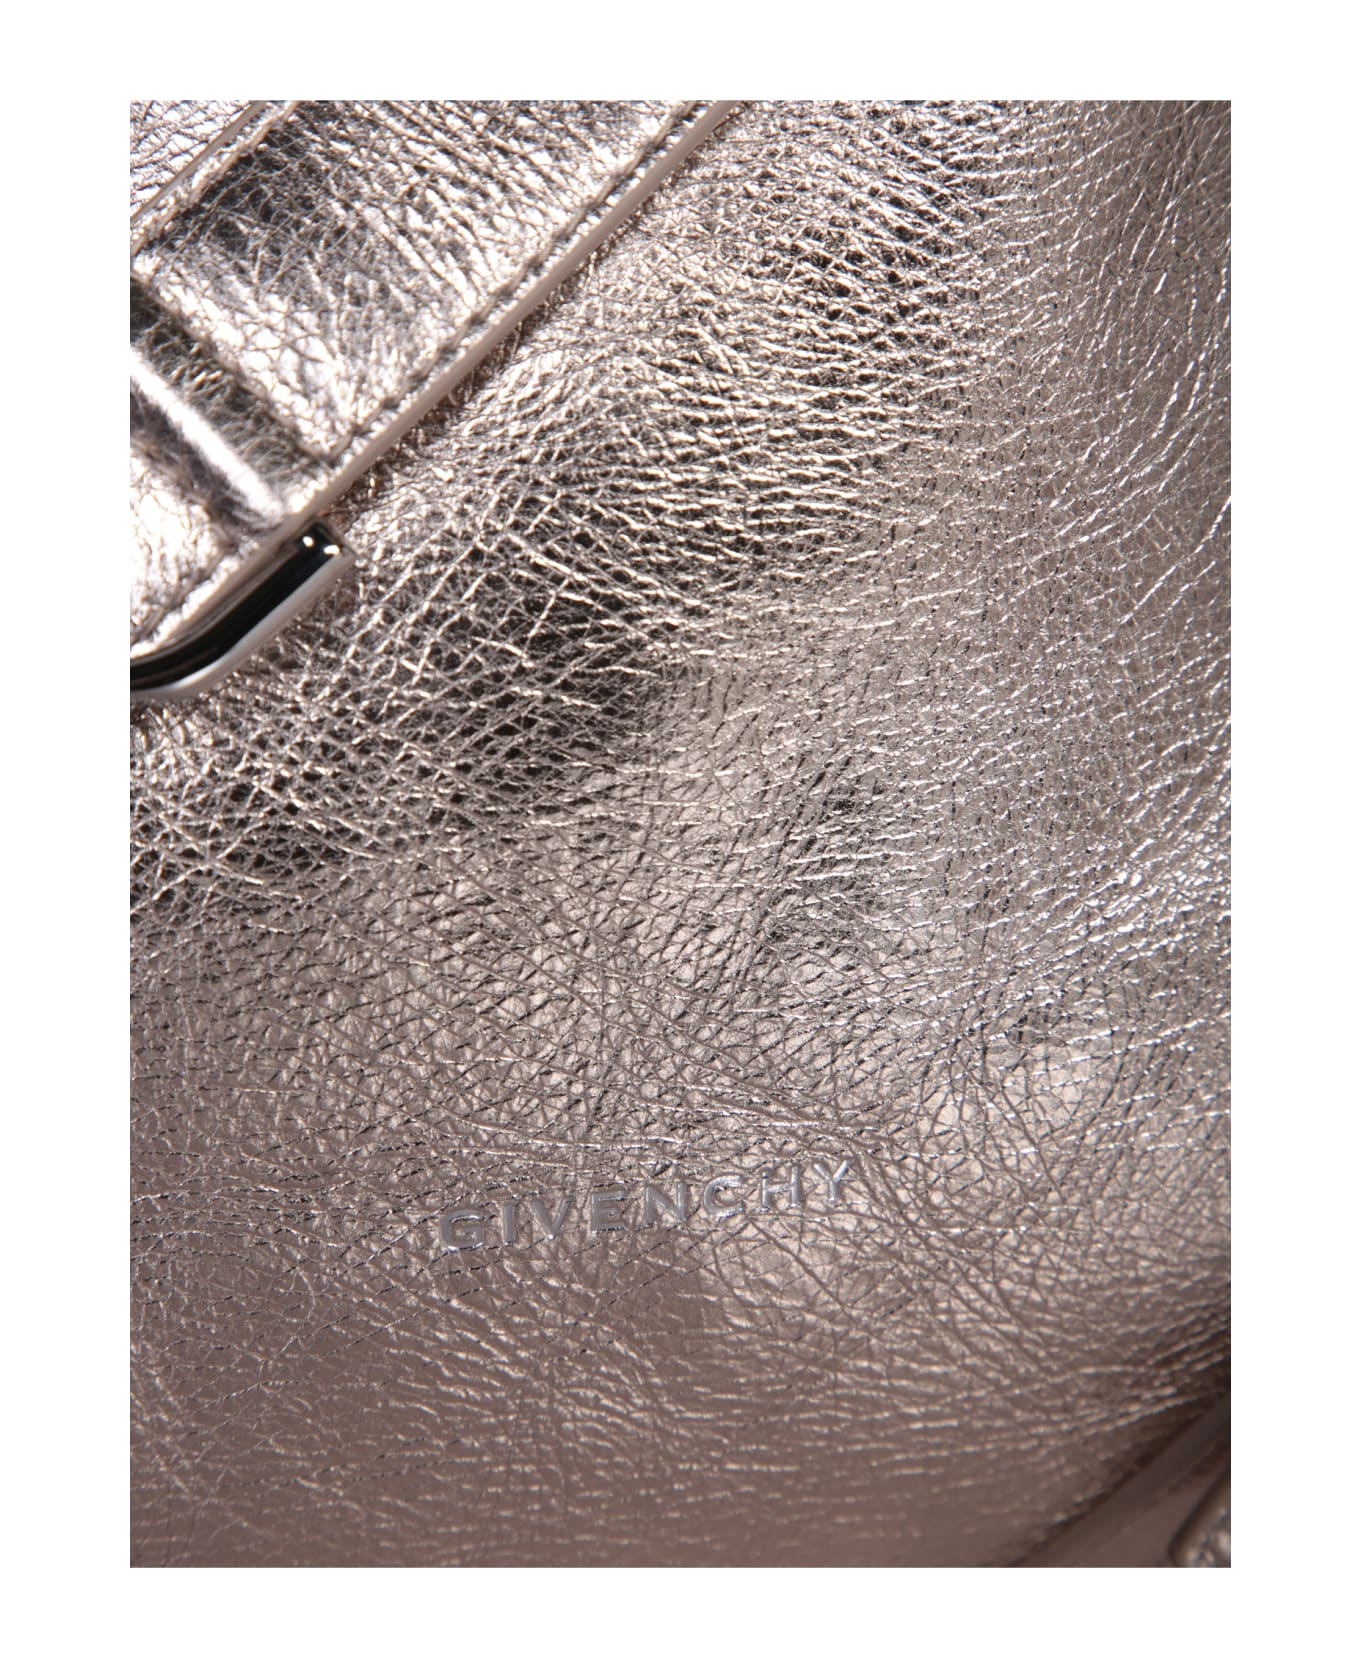 Givenchy Voyou Medium Bag - Metallic